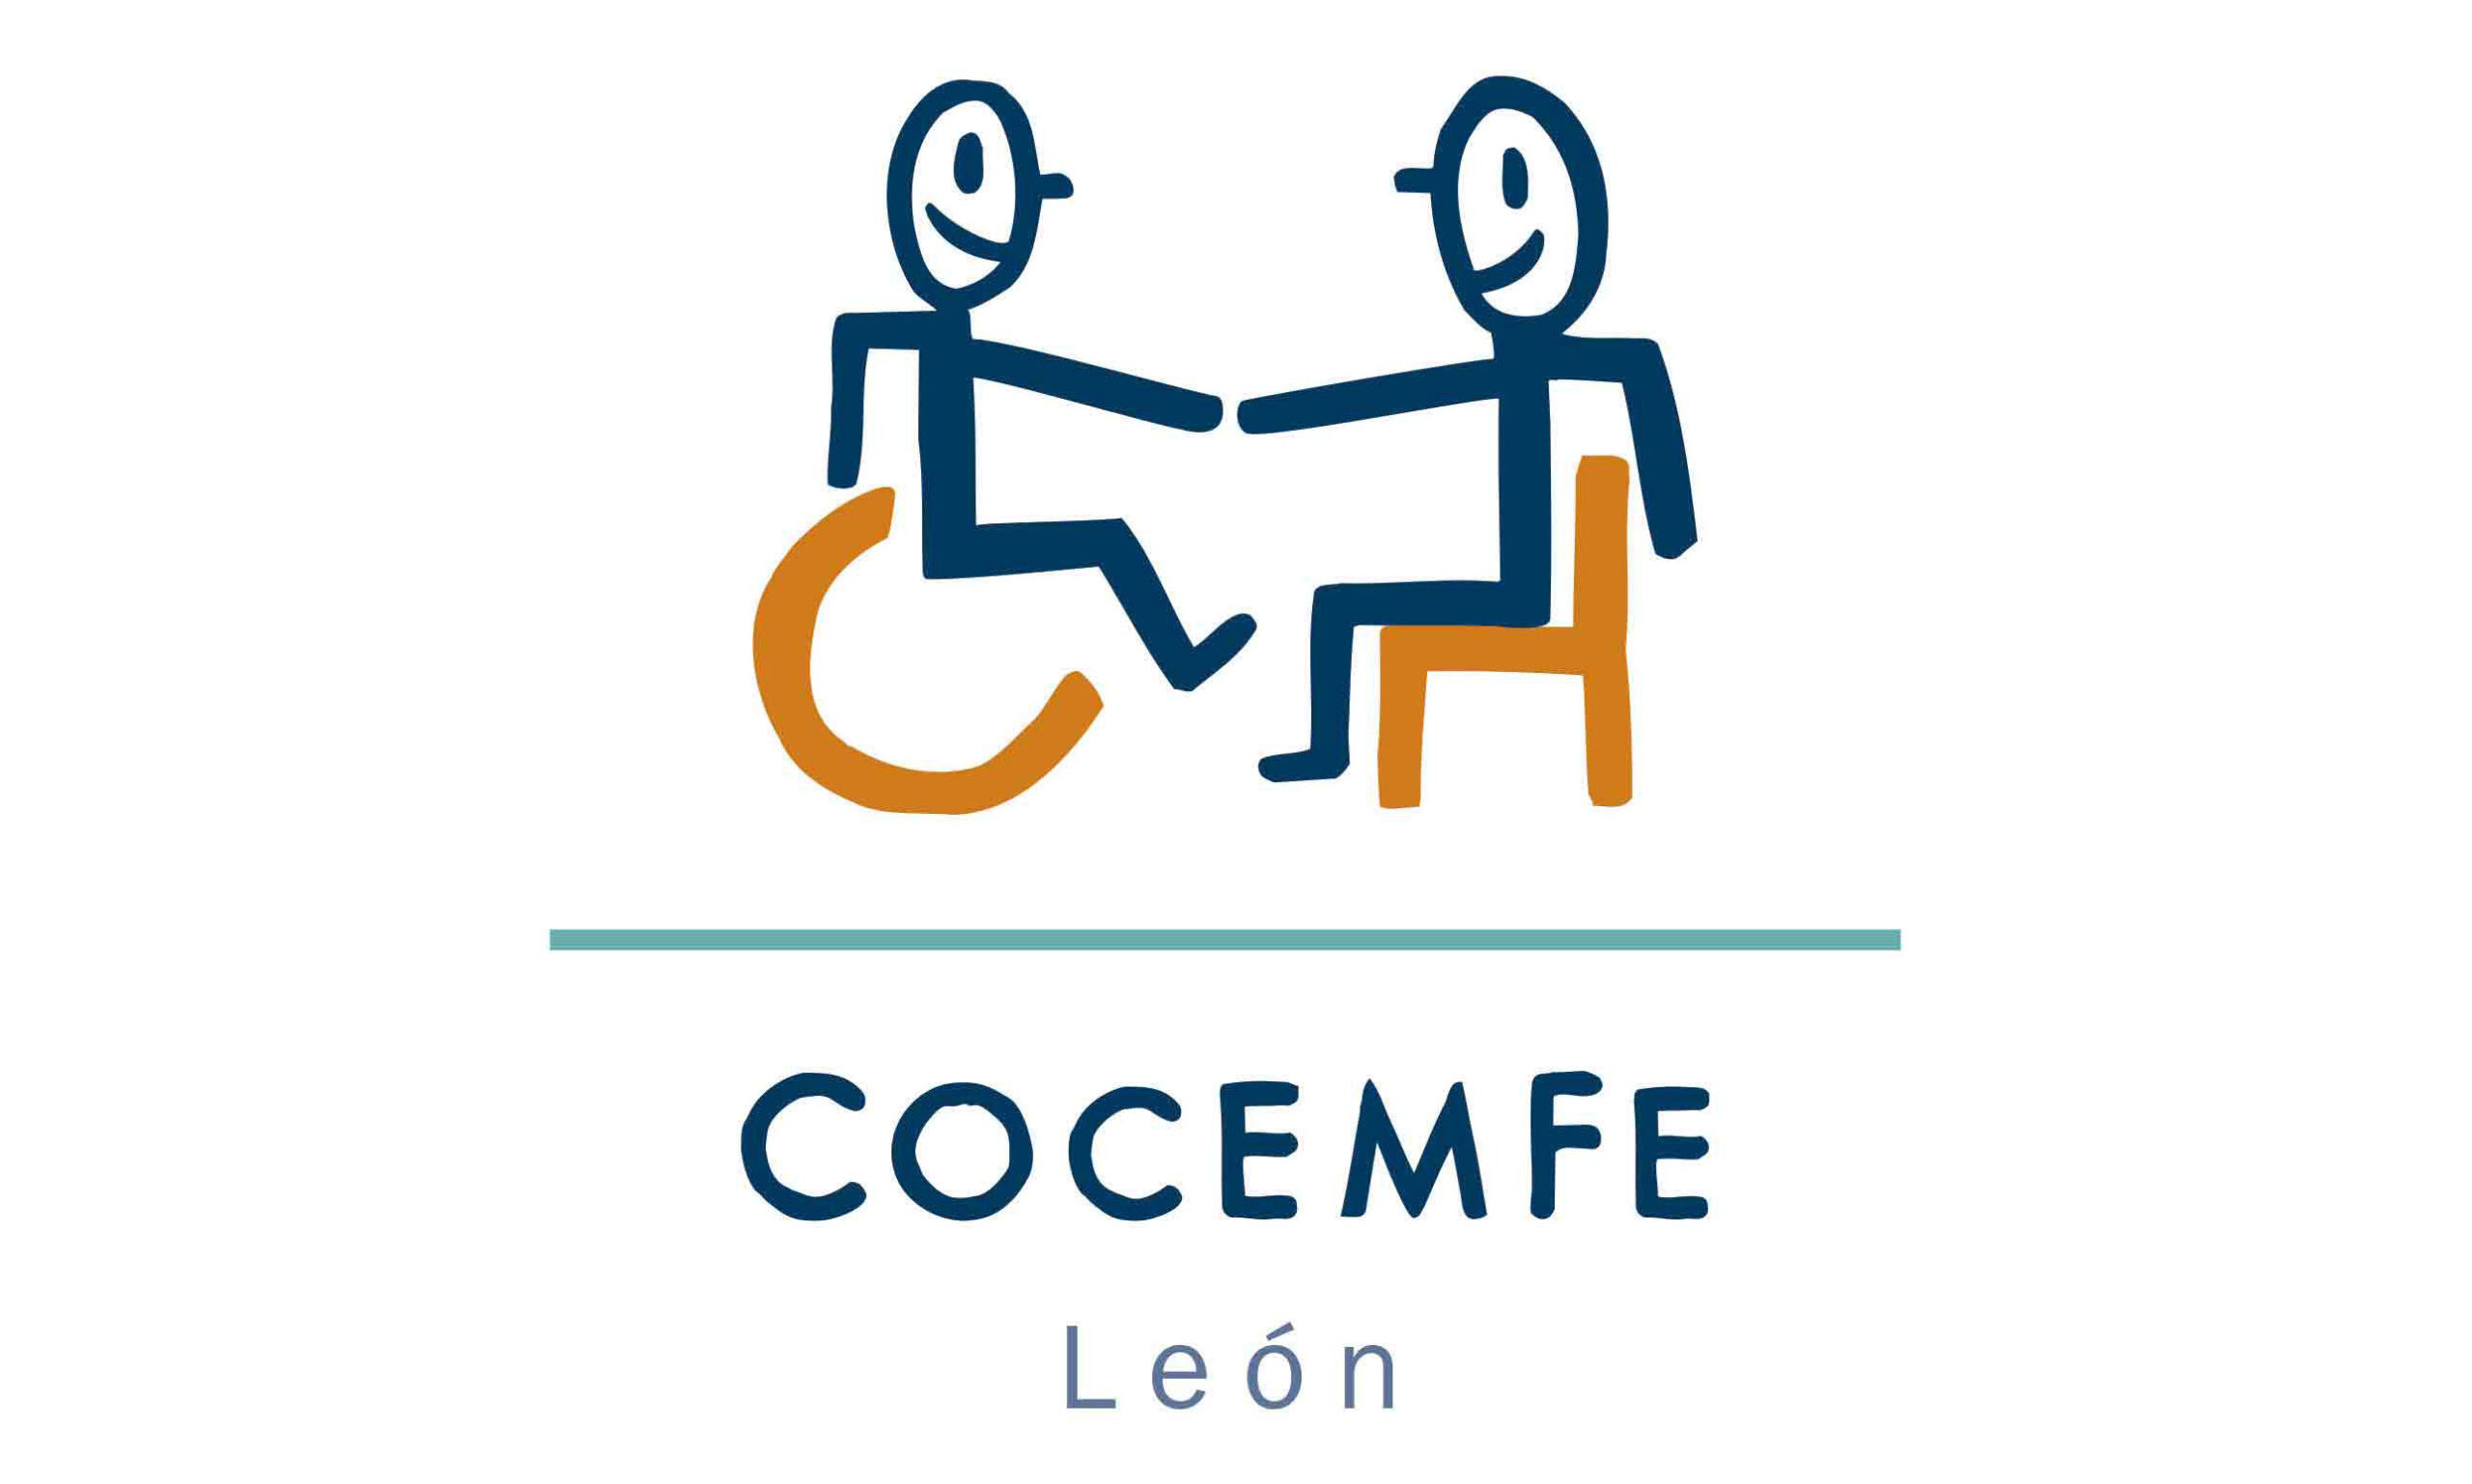 Cocemfe León